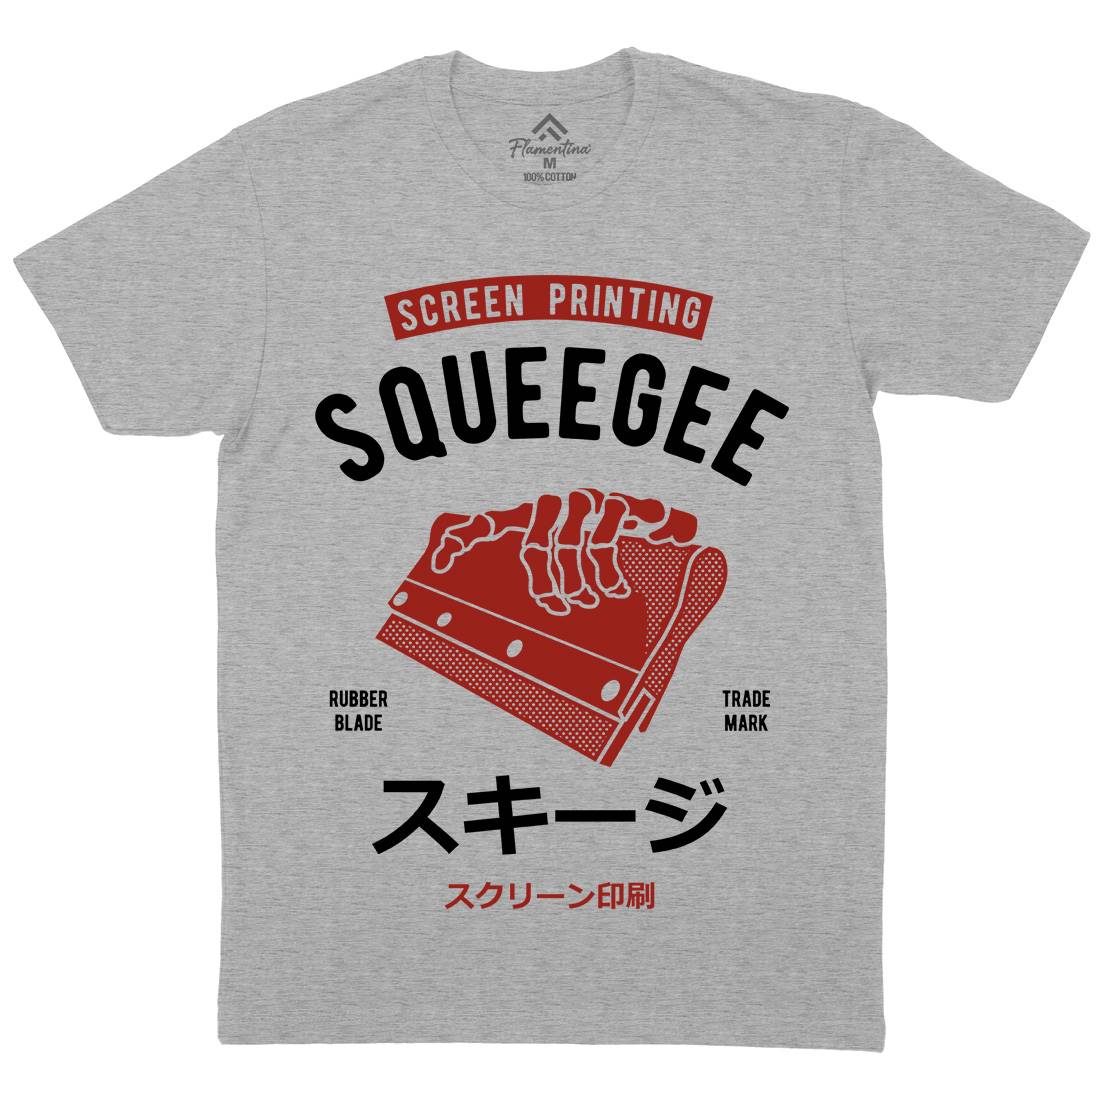 Squeegee Social Club Mens Organic Crew Neck T-Shirt Work A282